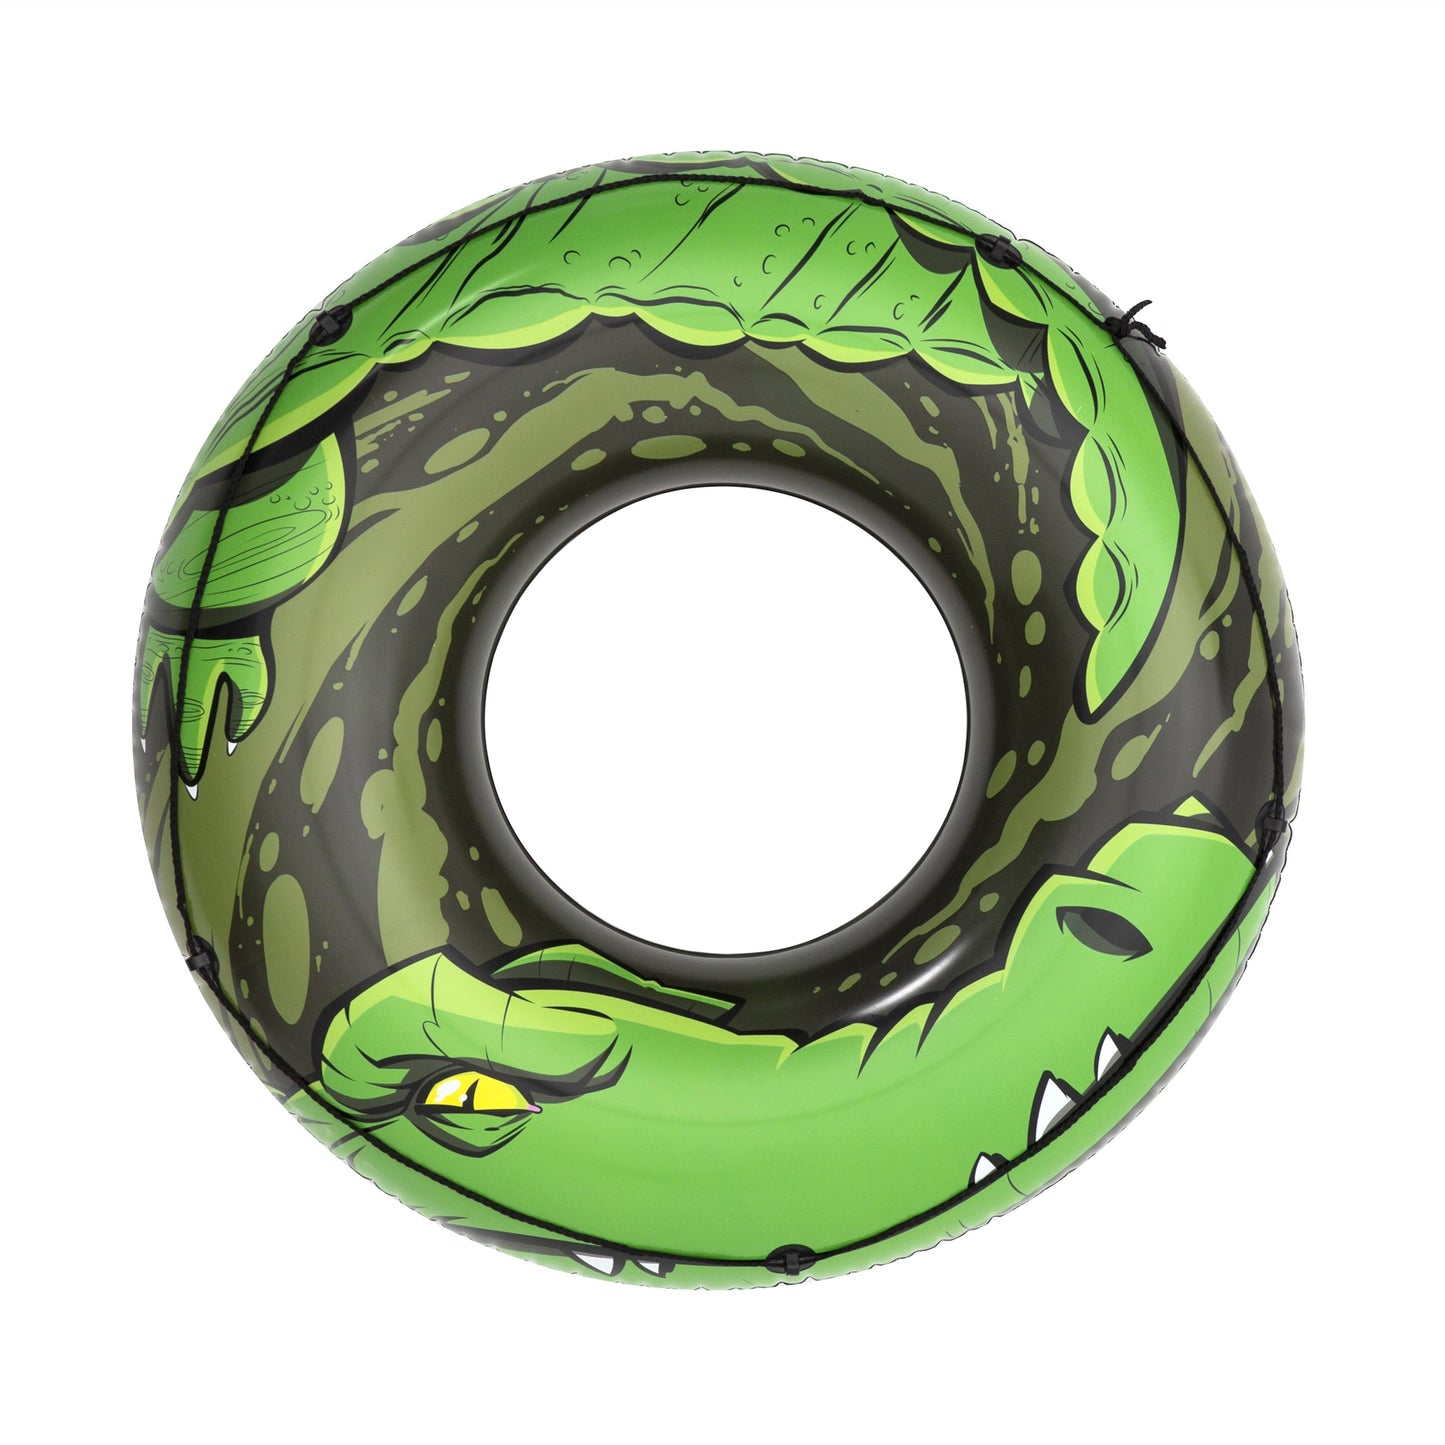 H2OGO! River Gator Inflatable Tube